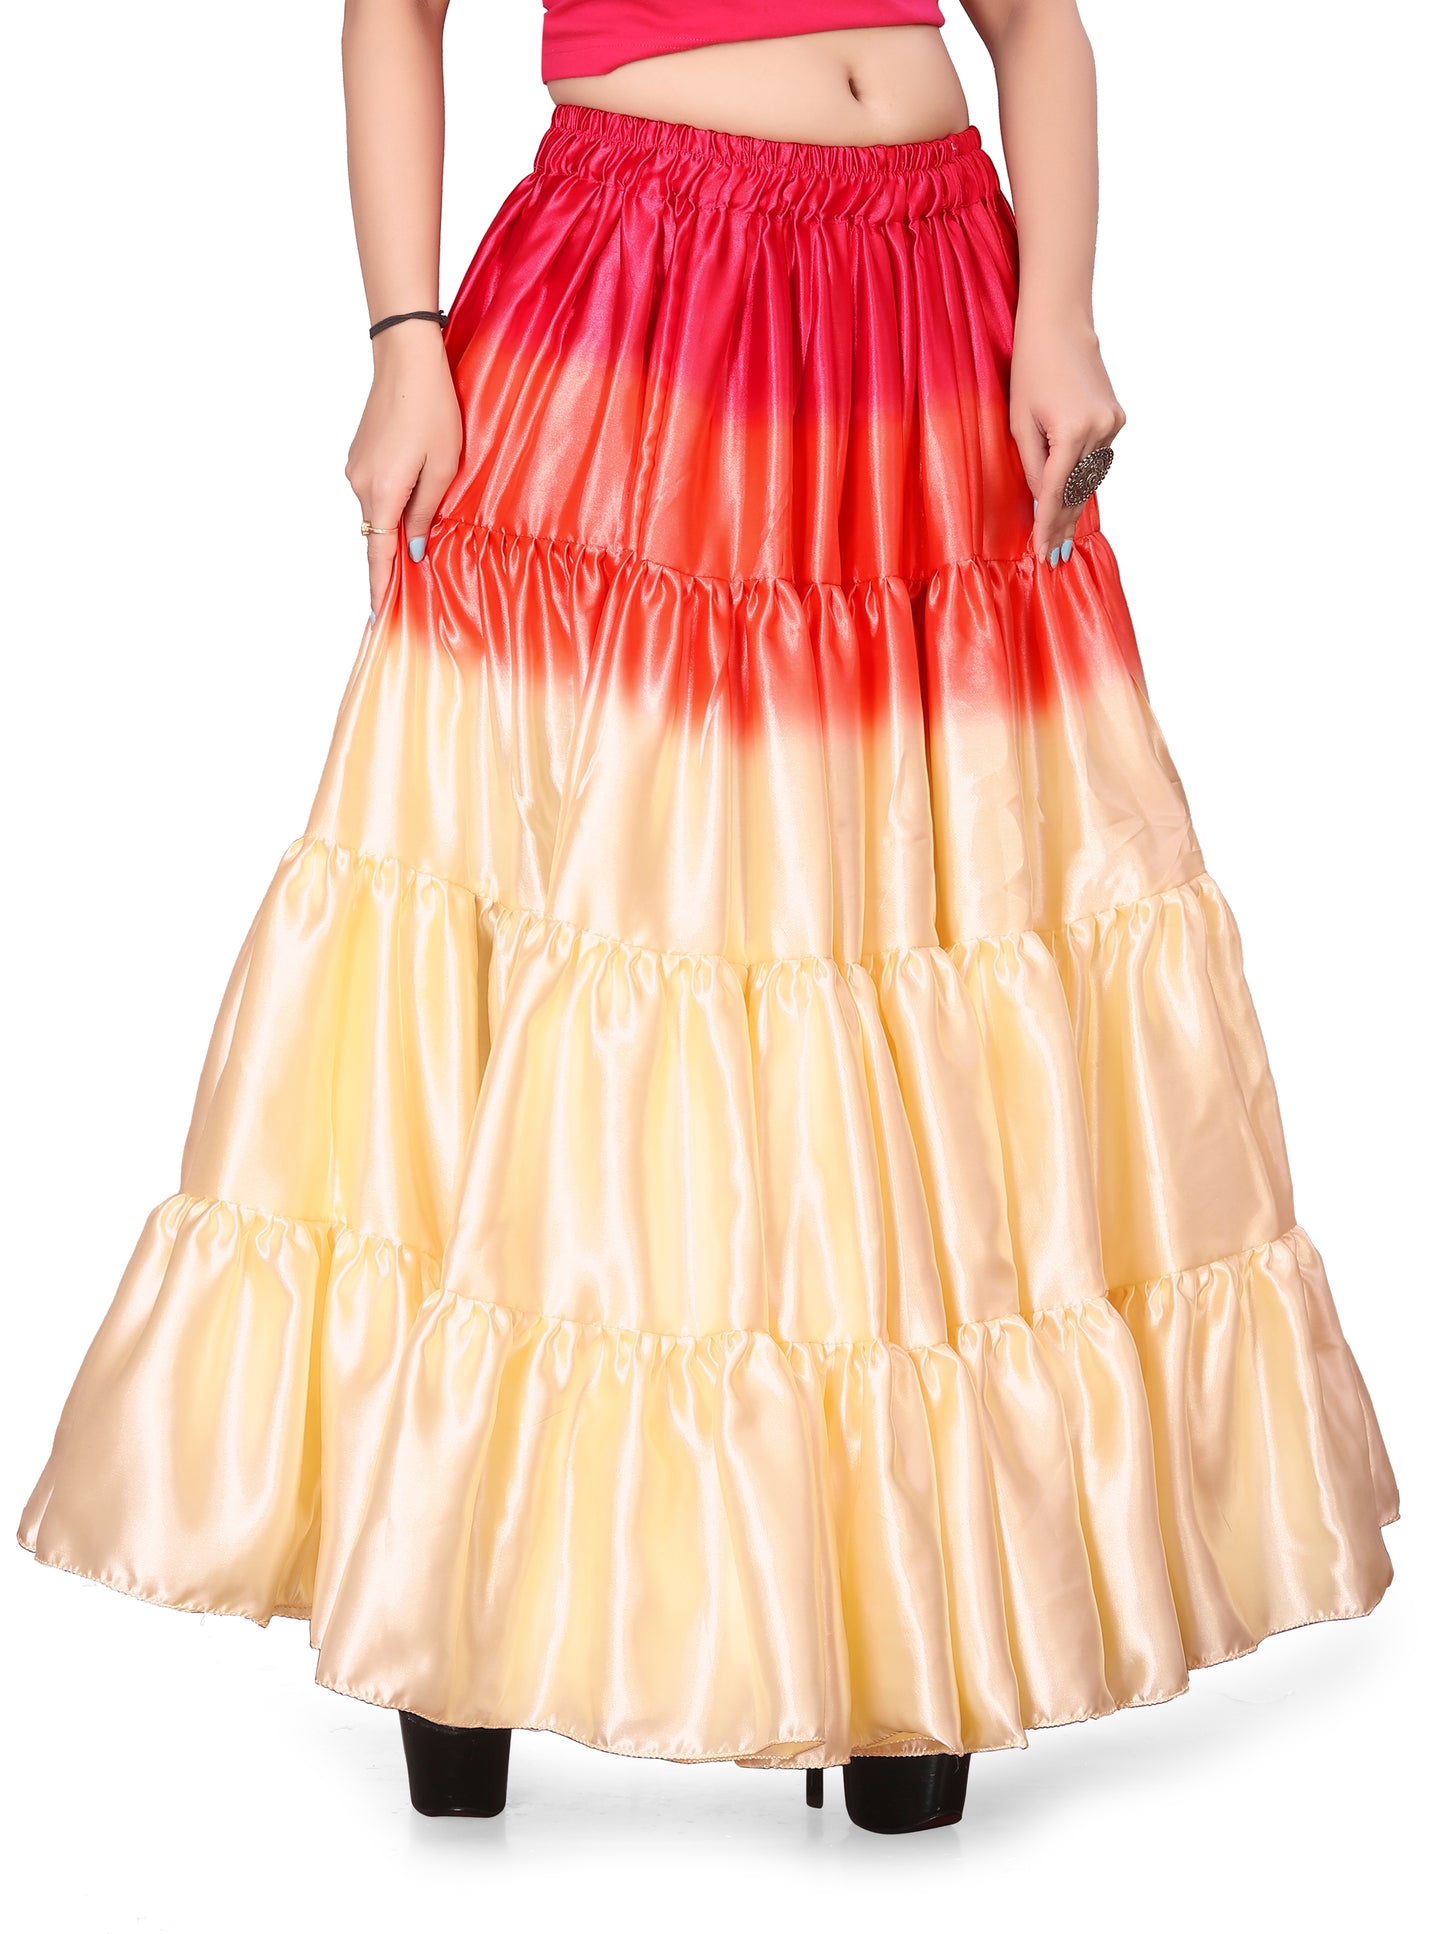 Satin 25 Yard 4 Tier Skirt Multi Color Skirt Belly Dance Skirt KF13-2